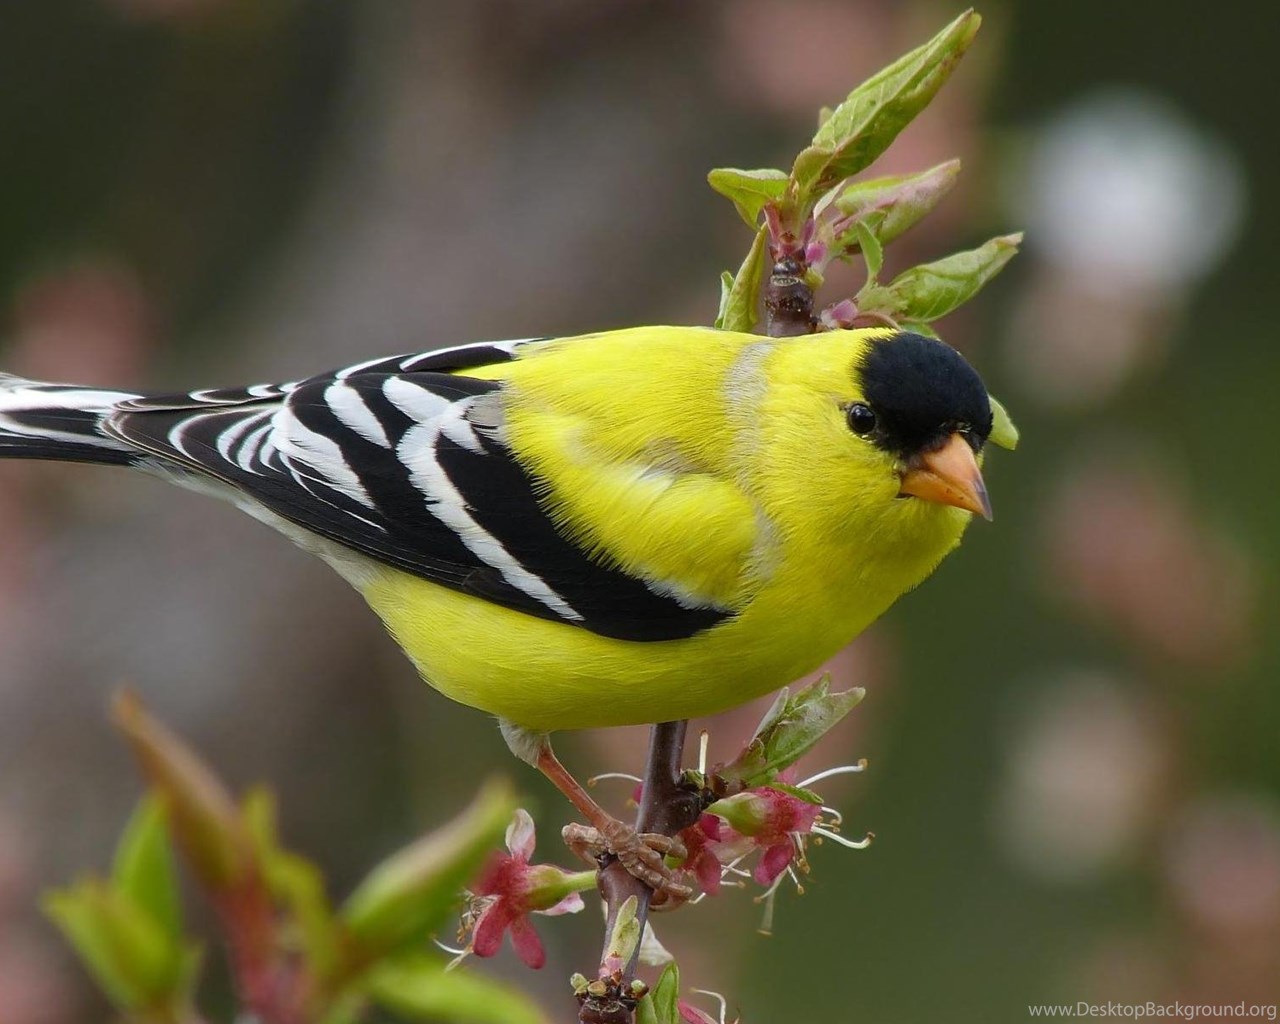 Птица с желтыми полосками на крыльях